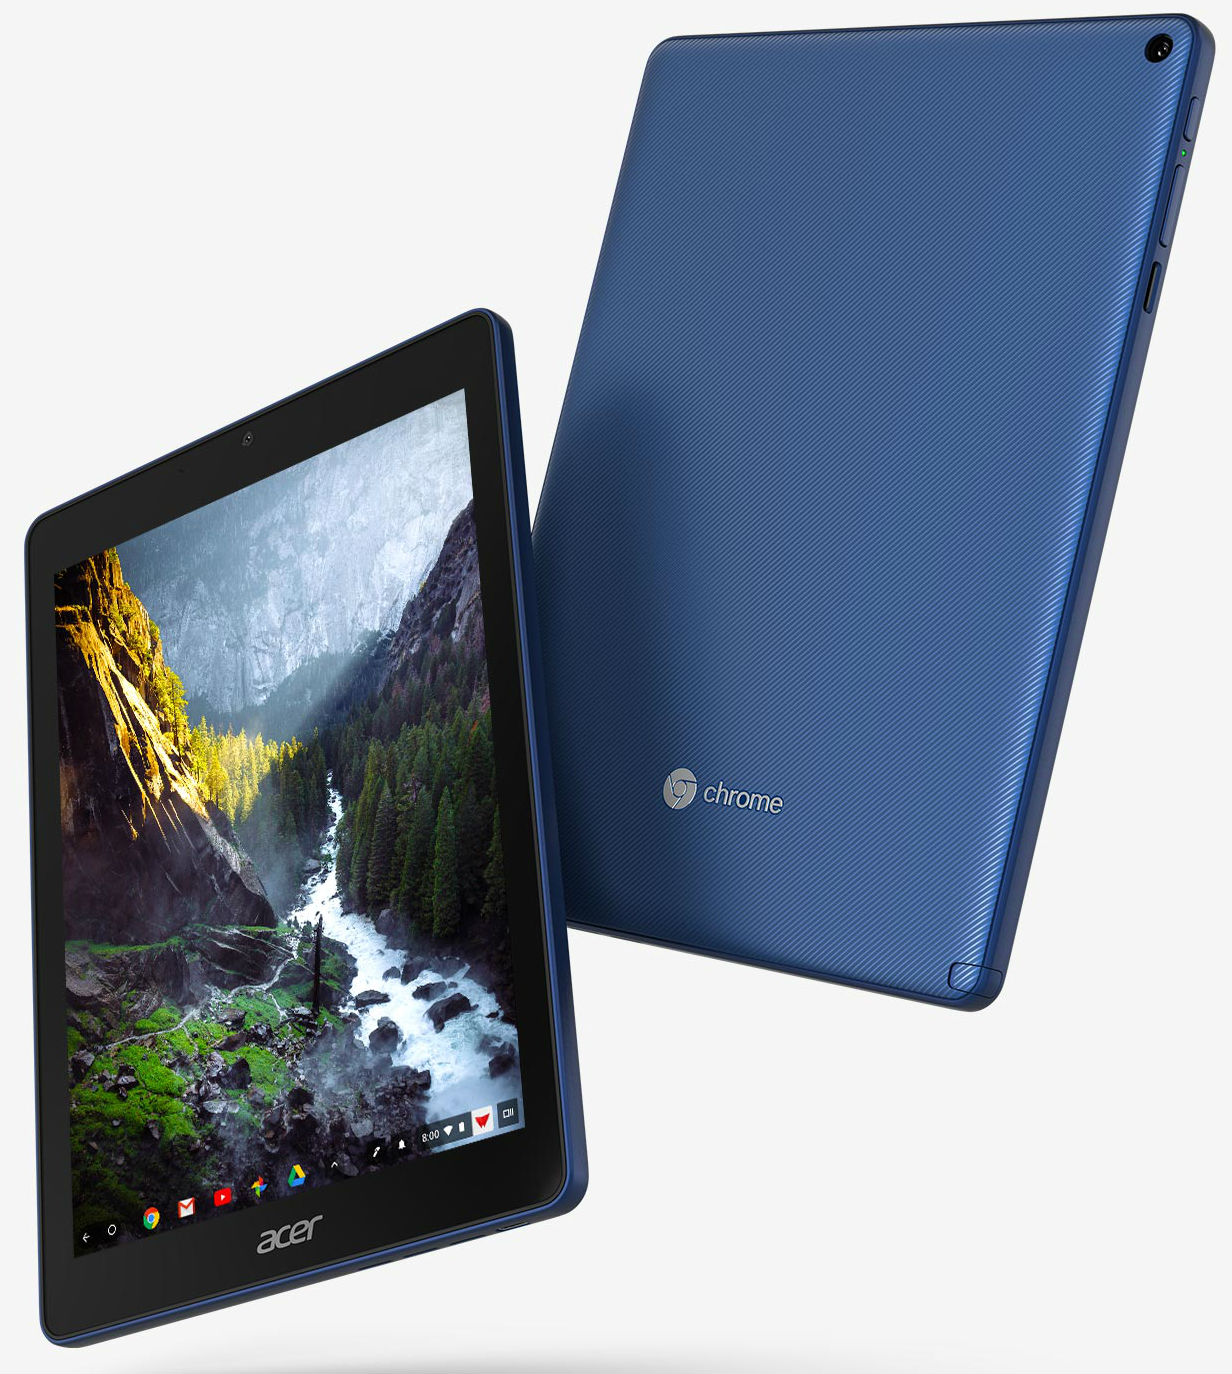 Acer представила первый в мире планшет на базе системы Chrome OS